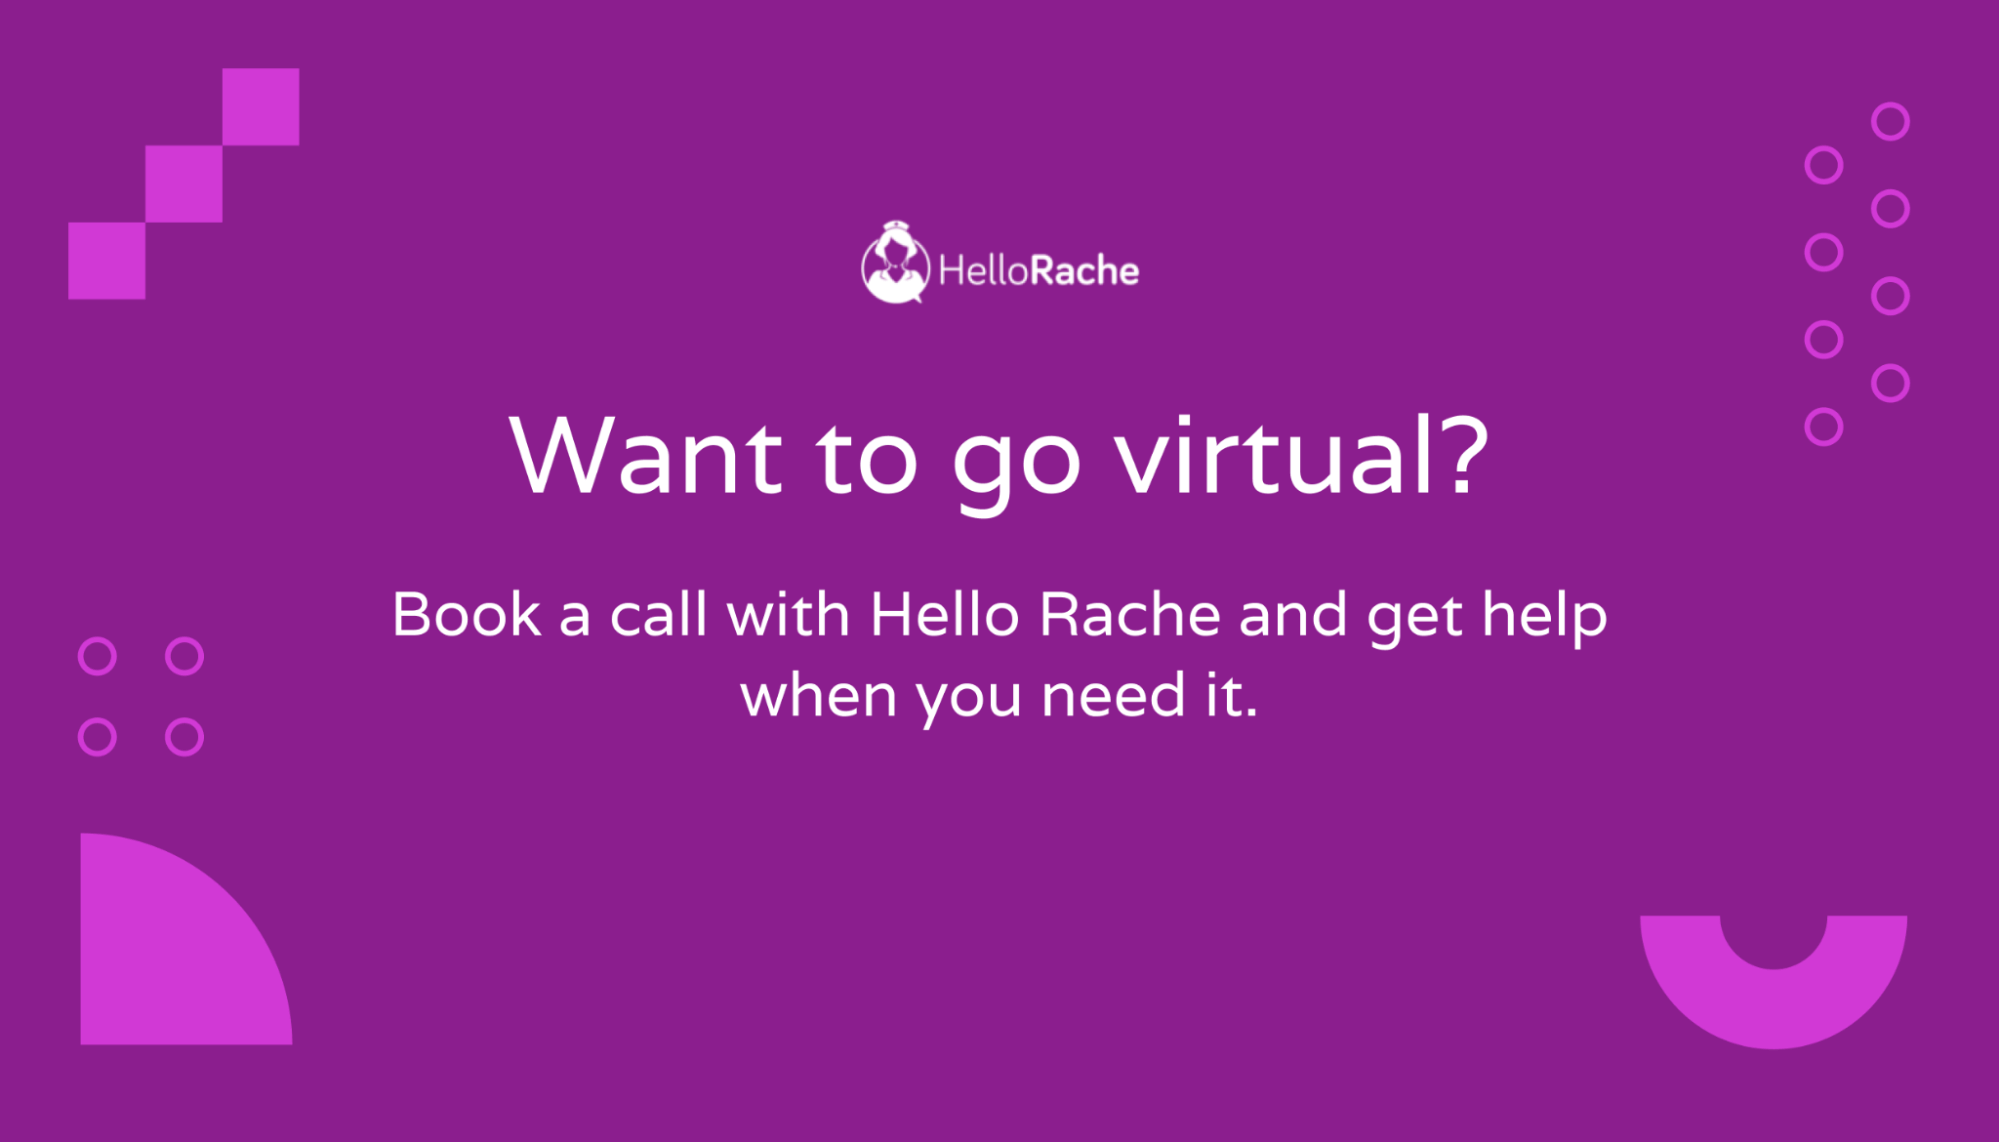 Book a call with Hello Rache